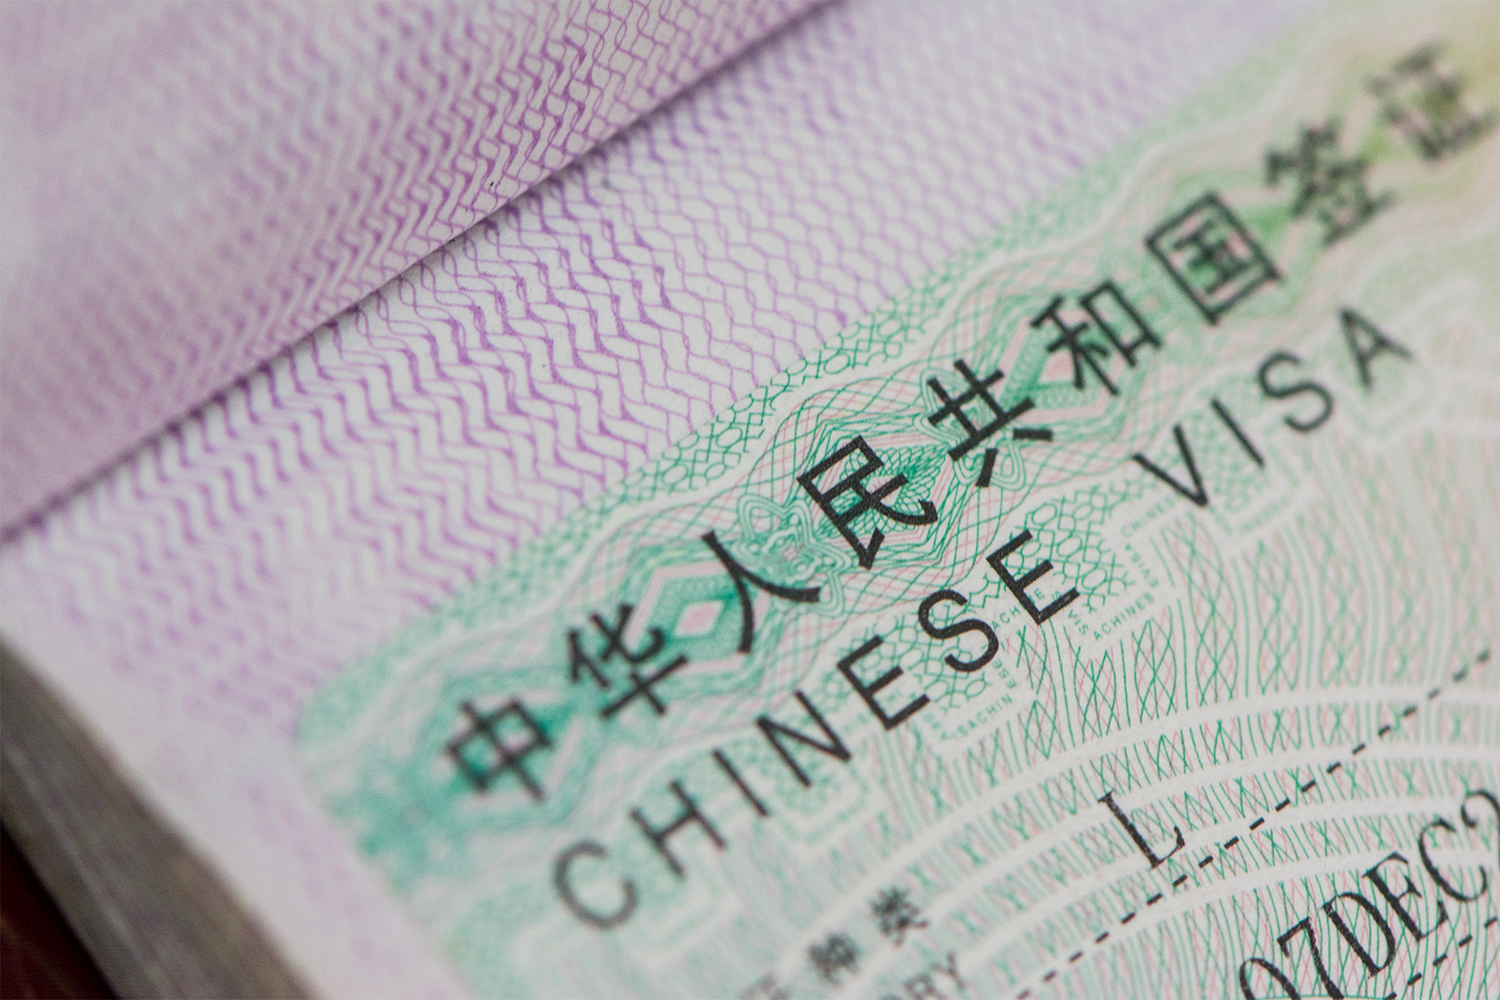 A Chinese visa